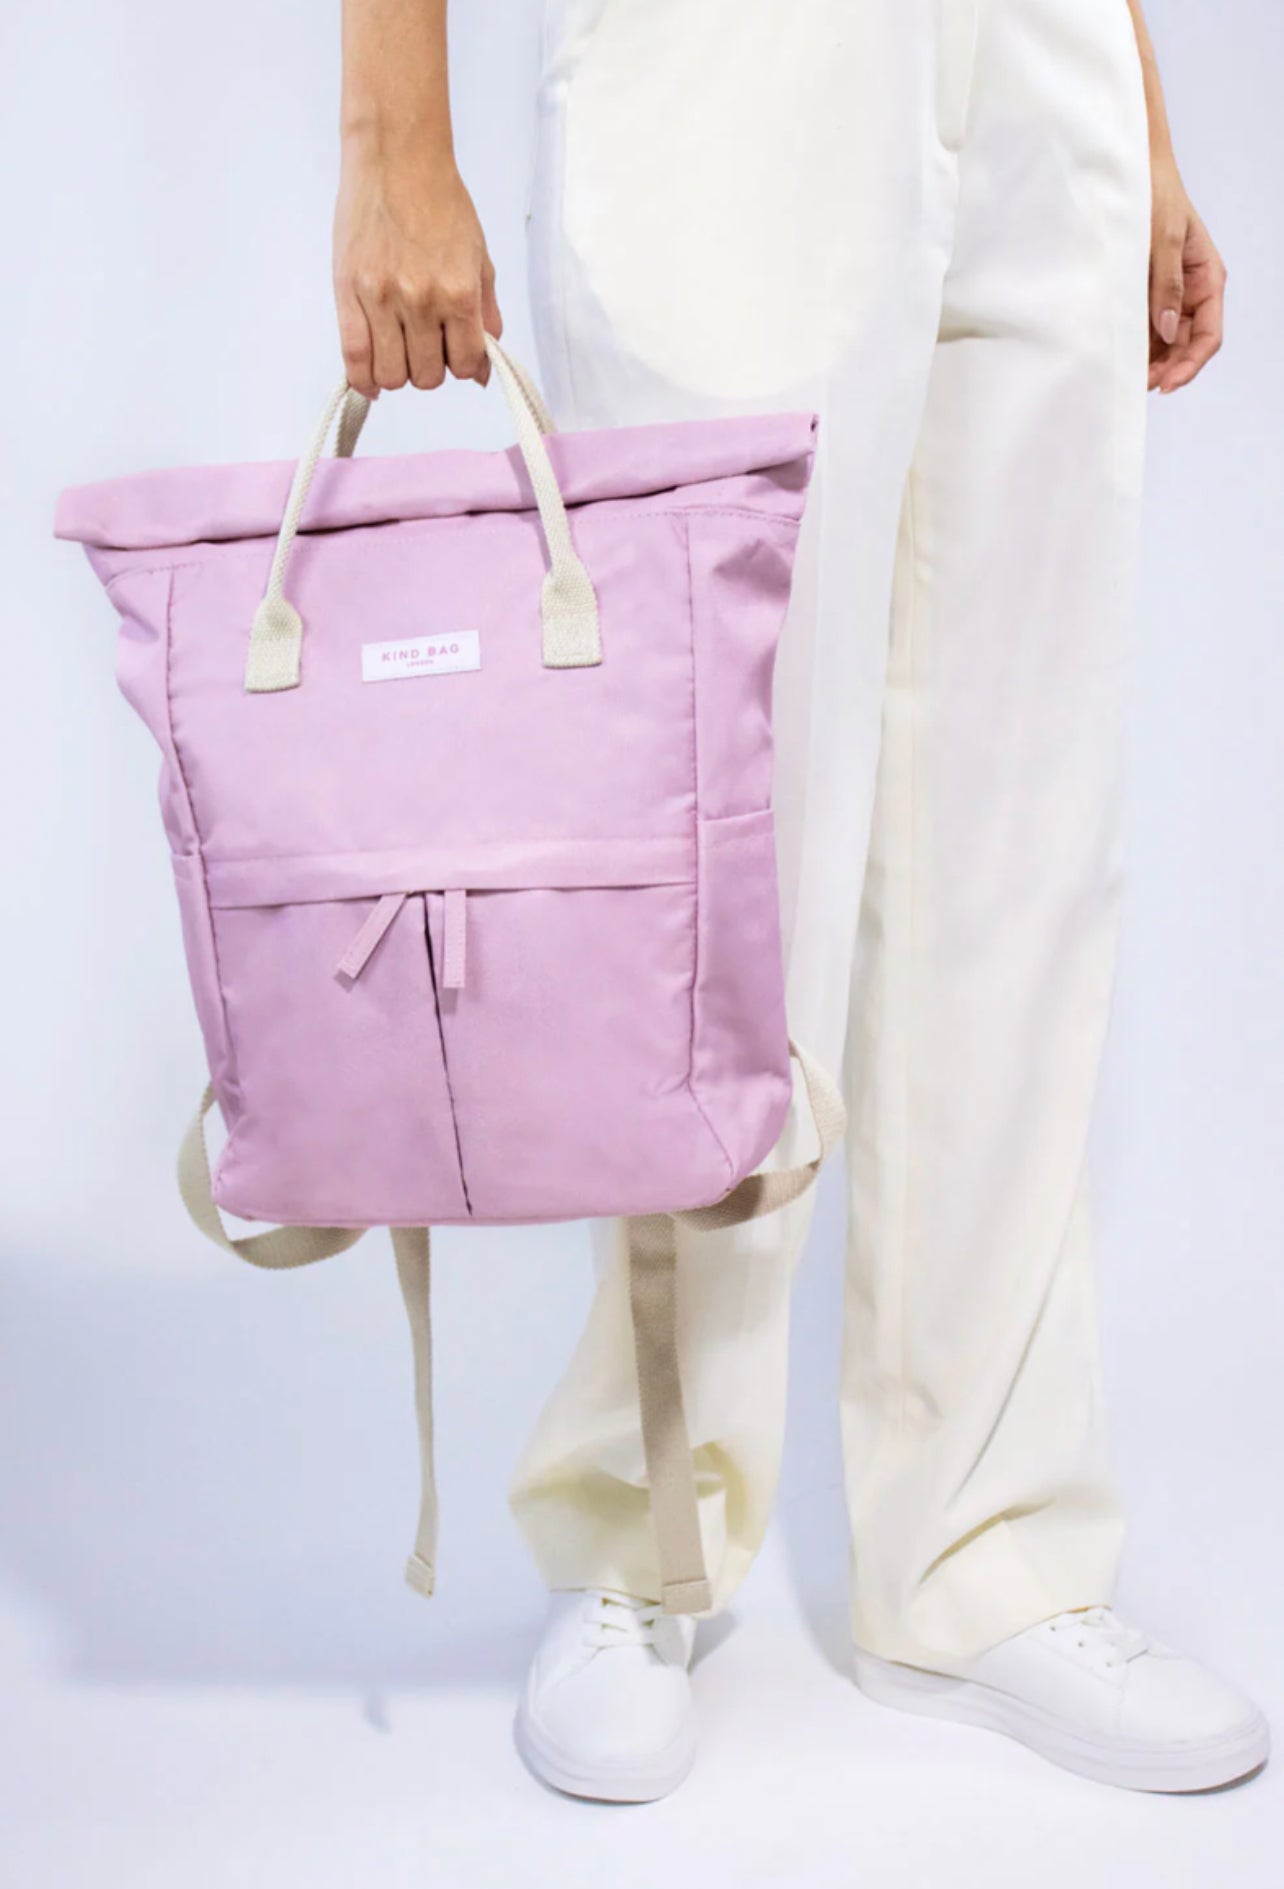 Kind Bag - Backpack, Medium - The Flower Crate